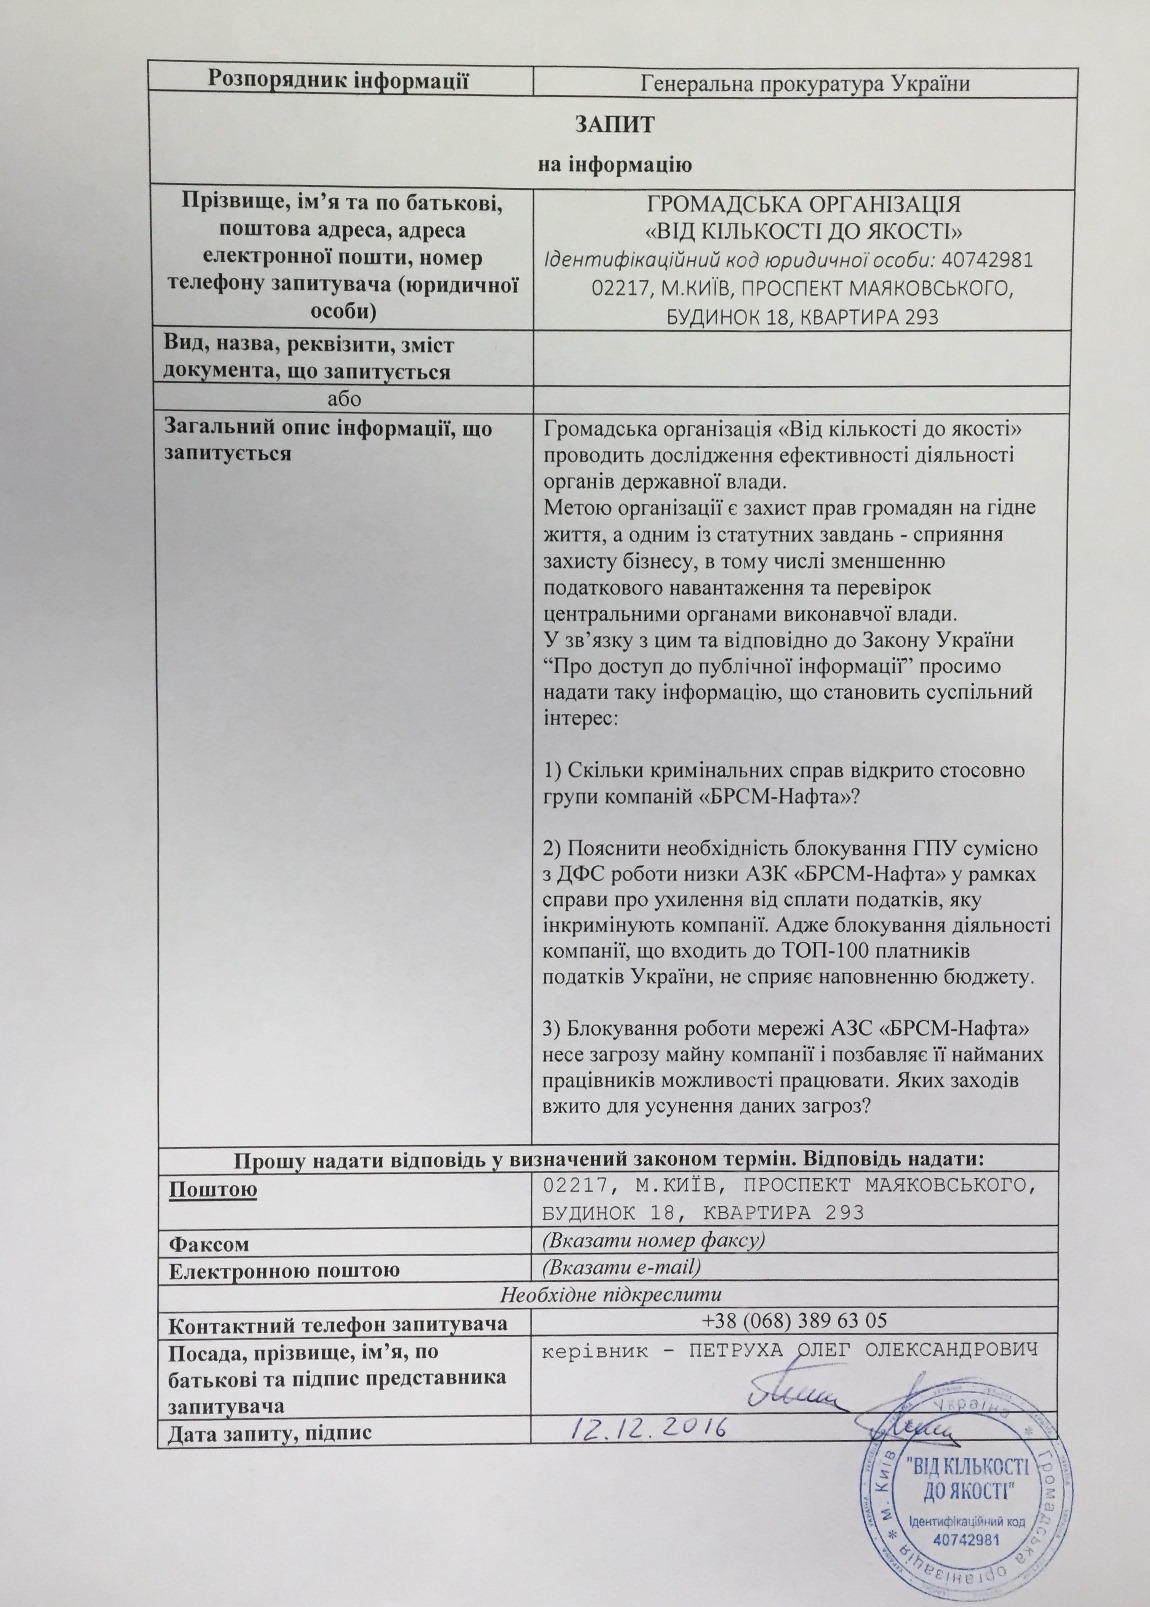 Запит до Генеральної прокуратури України від 12.12.2016